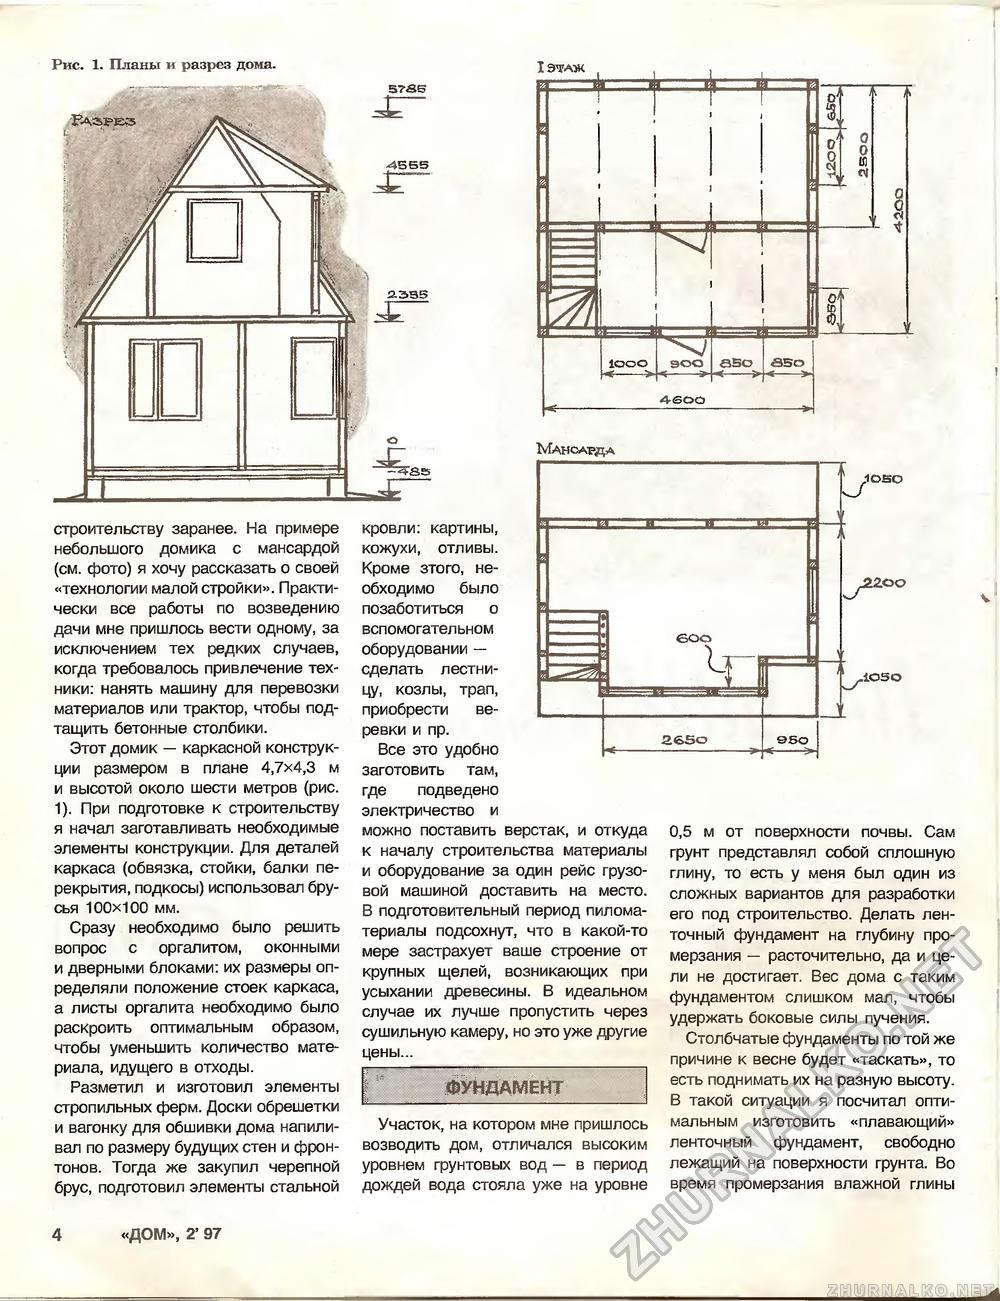 Дом 1997-02, страница 4